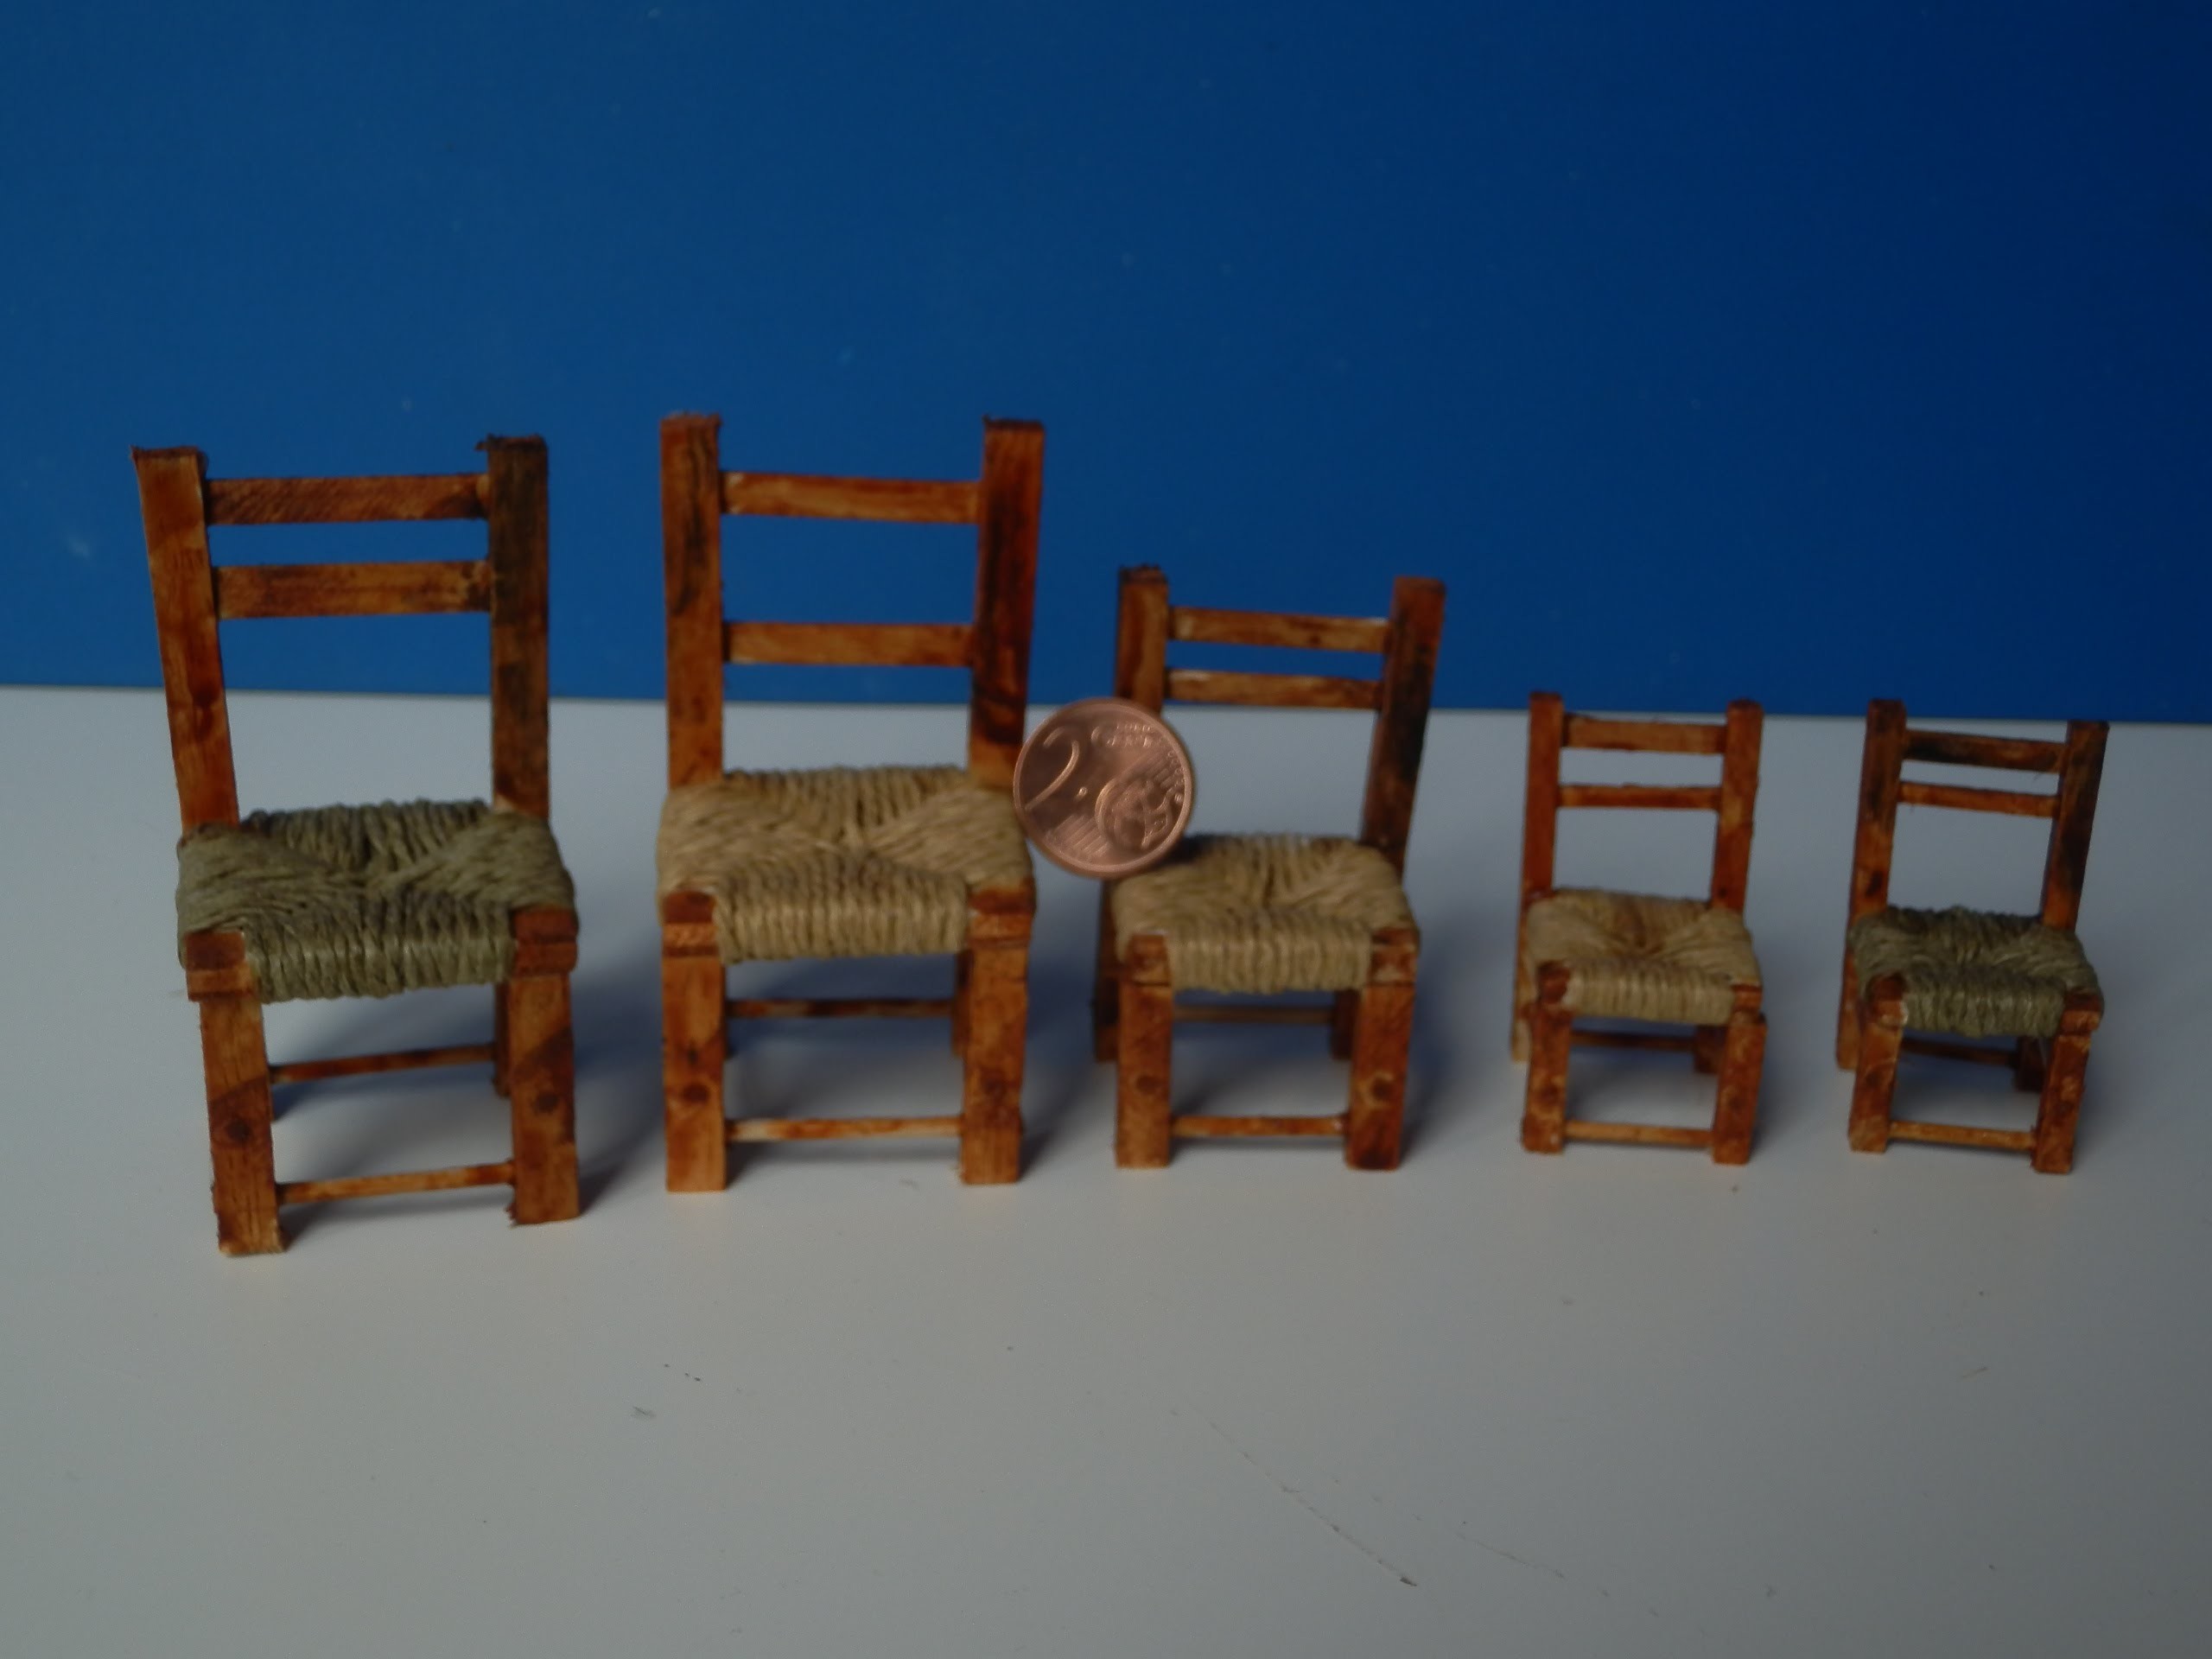 TUTORIAL: come costruire le sedie per un presepe